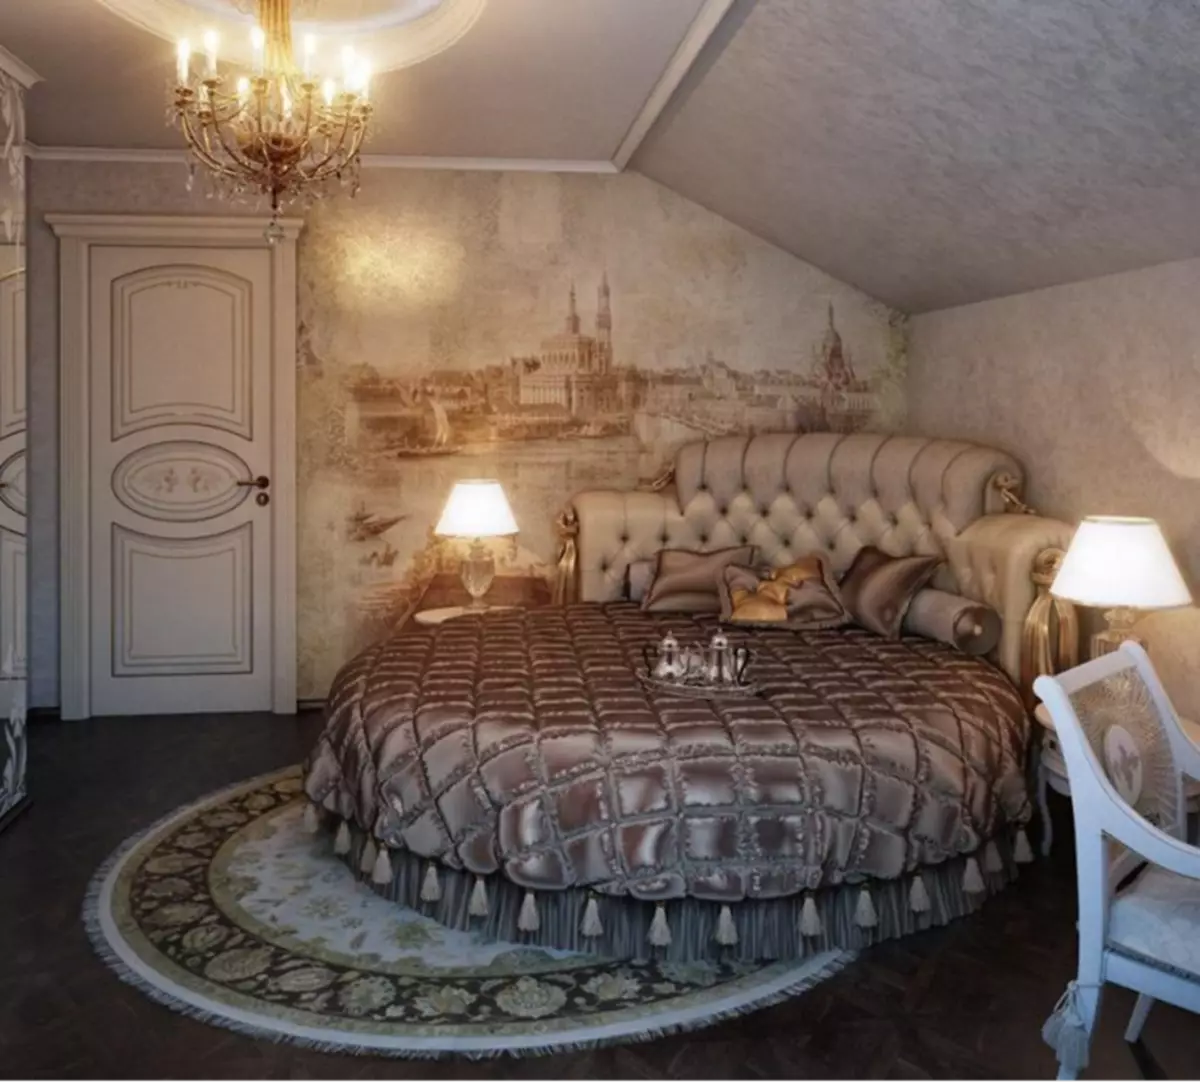 Covor rotund în interiorul dormitorului stil clasic